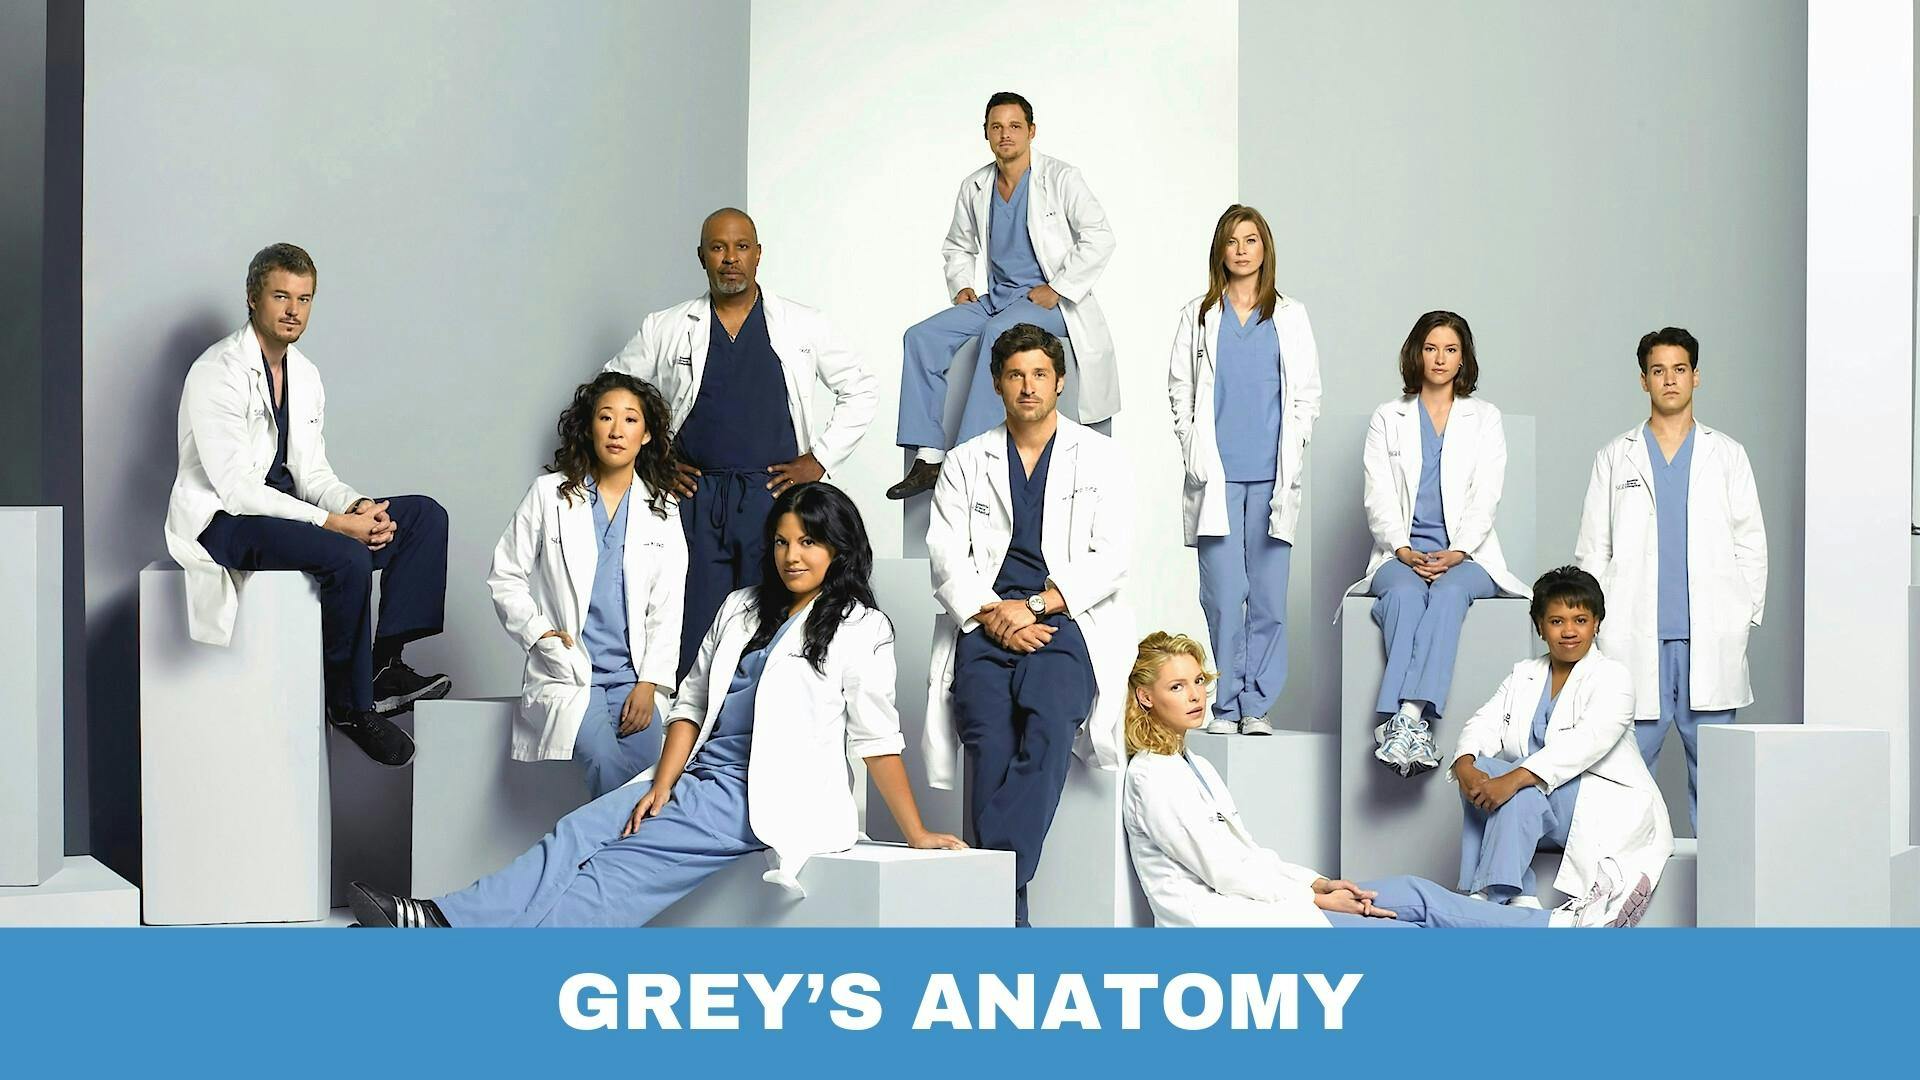 Poster des personnages de la série médicale Grey’s Anatomy